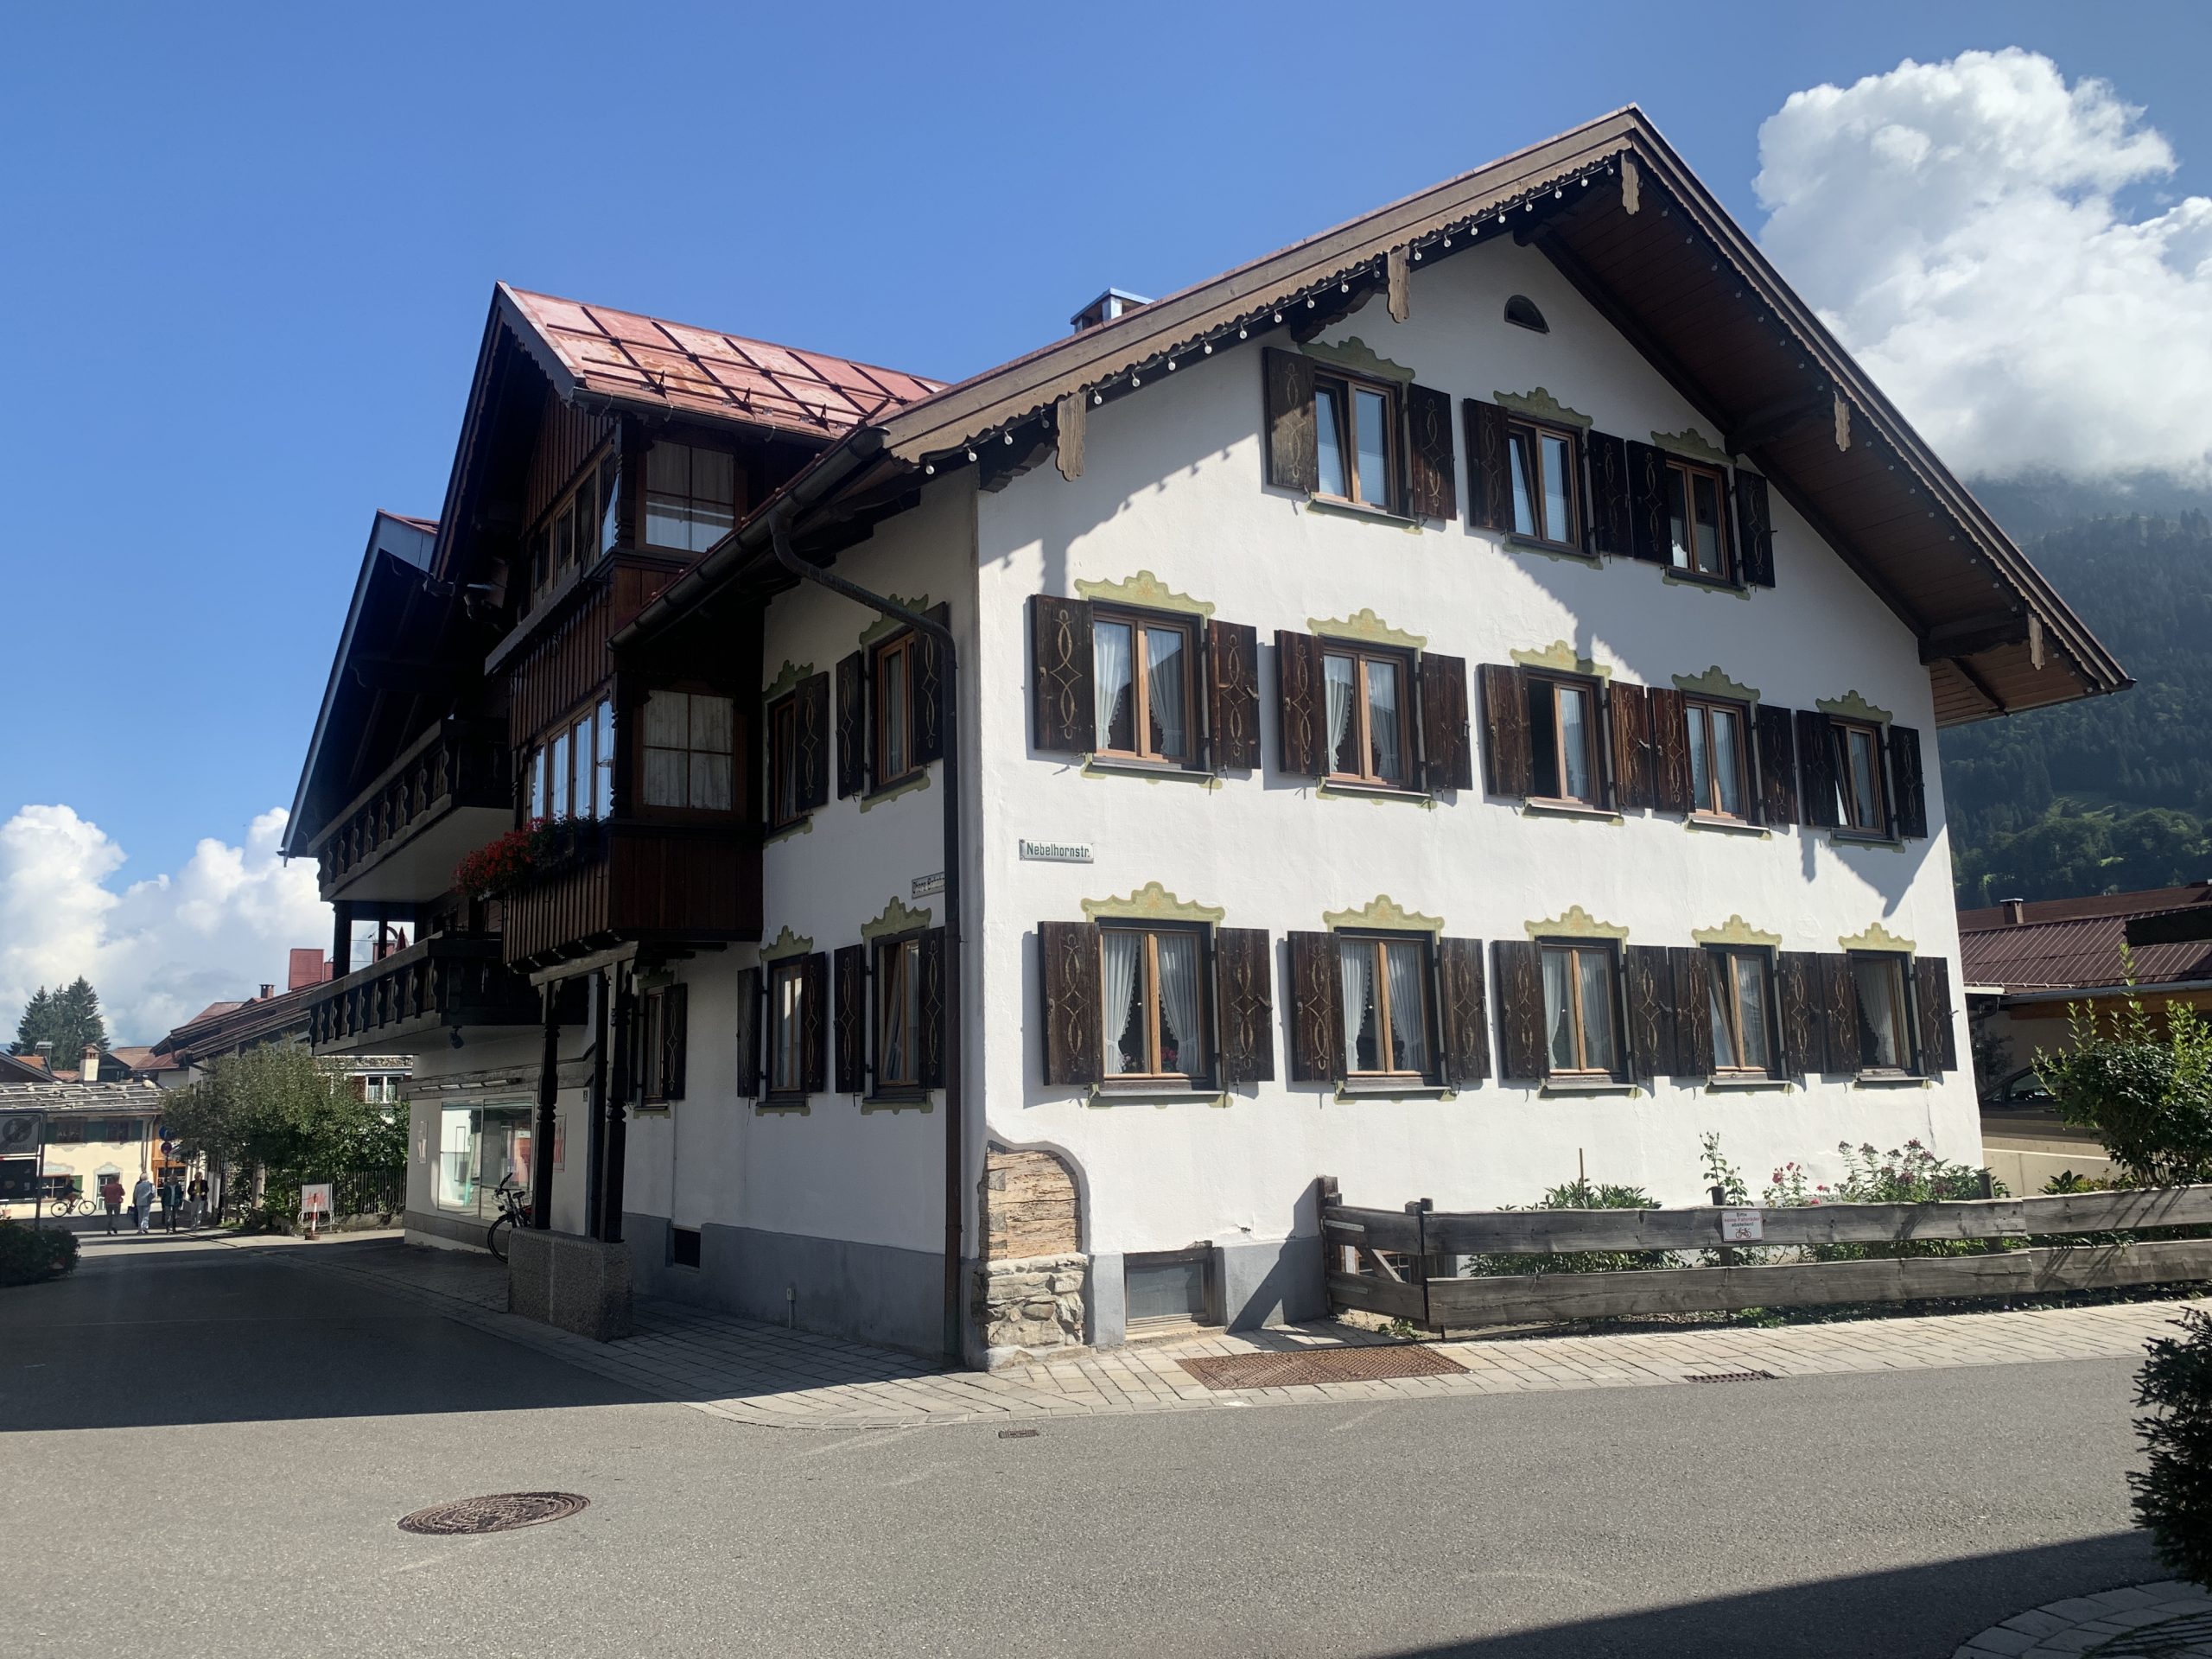 Typisches bayrisches Fachwerkhaus in Oberstdorf